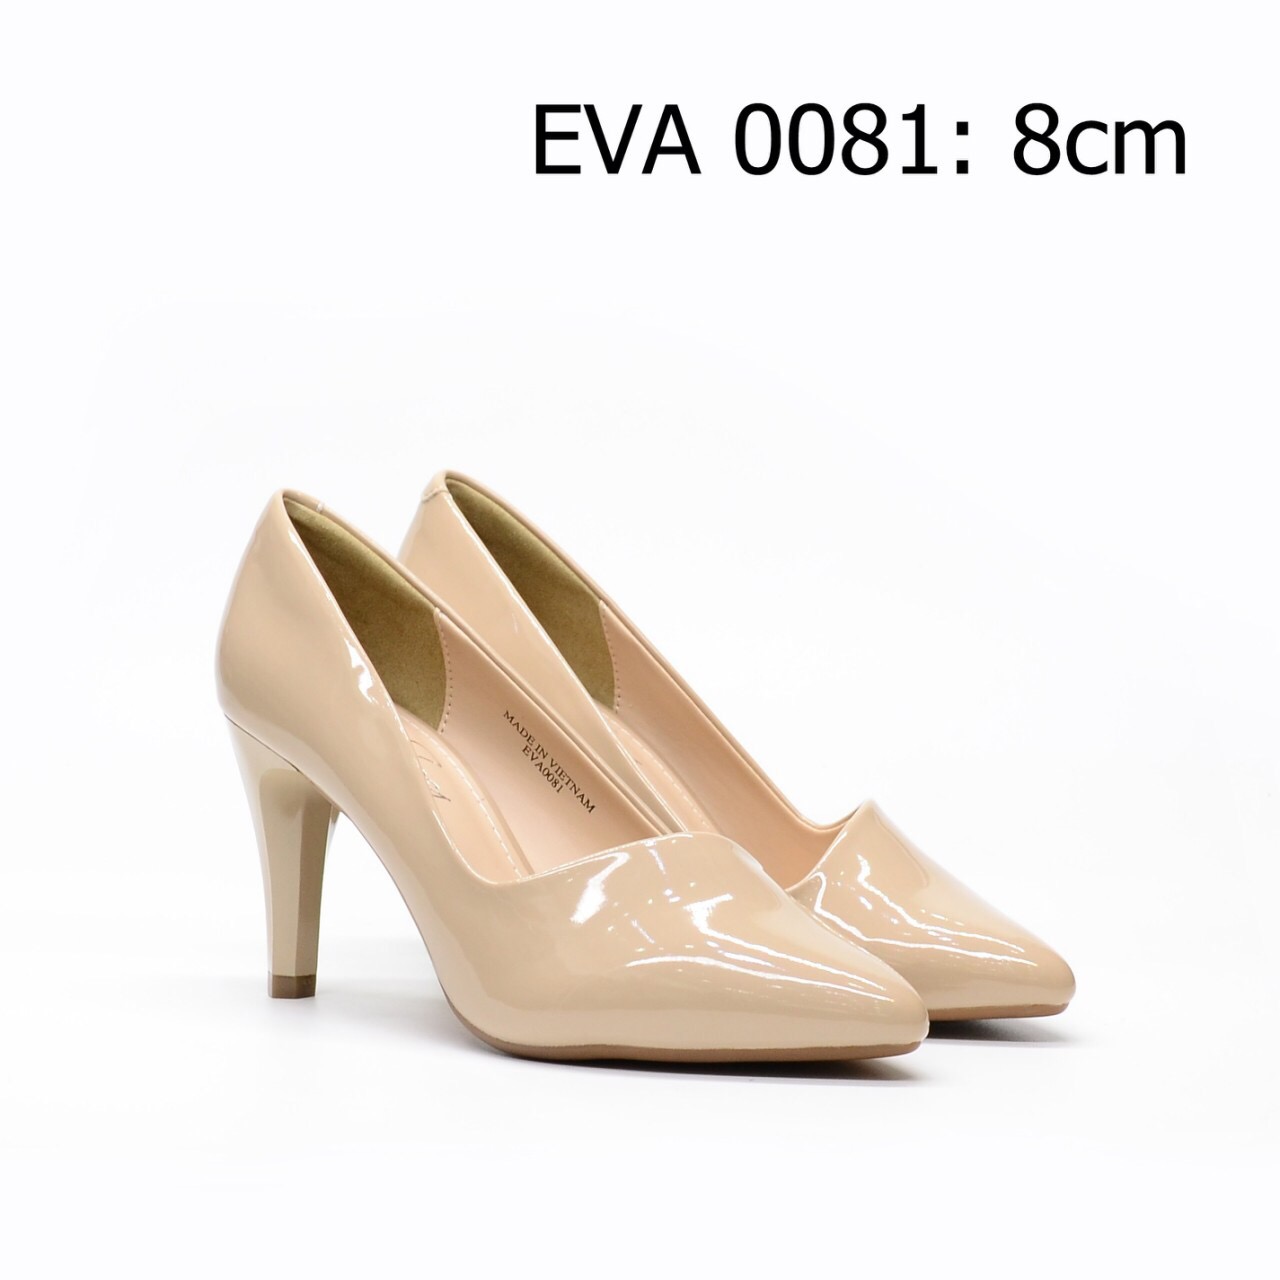 Giày cao gót EVA0081 kiểu dáng sang trọng với chất liệu da bóng trẻ trung, gót nhọn thanh thoát